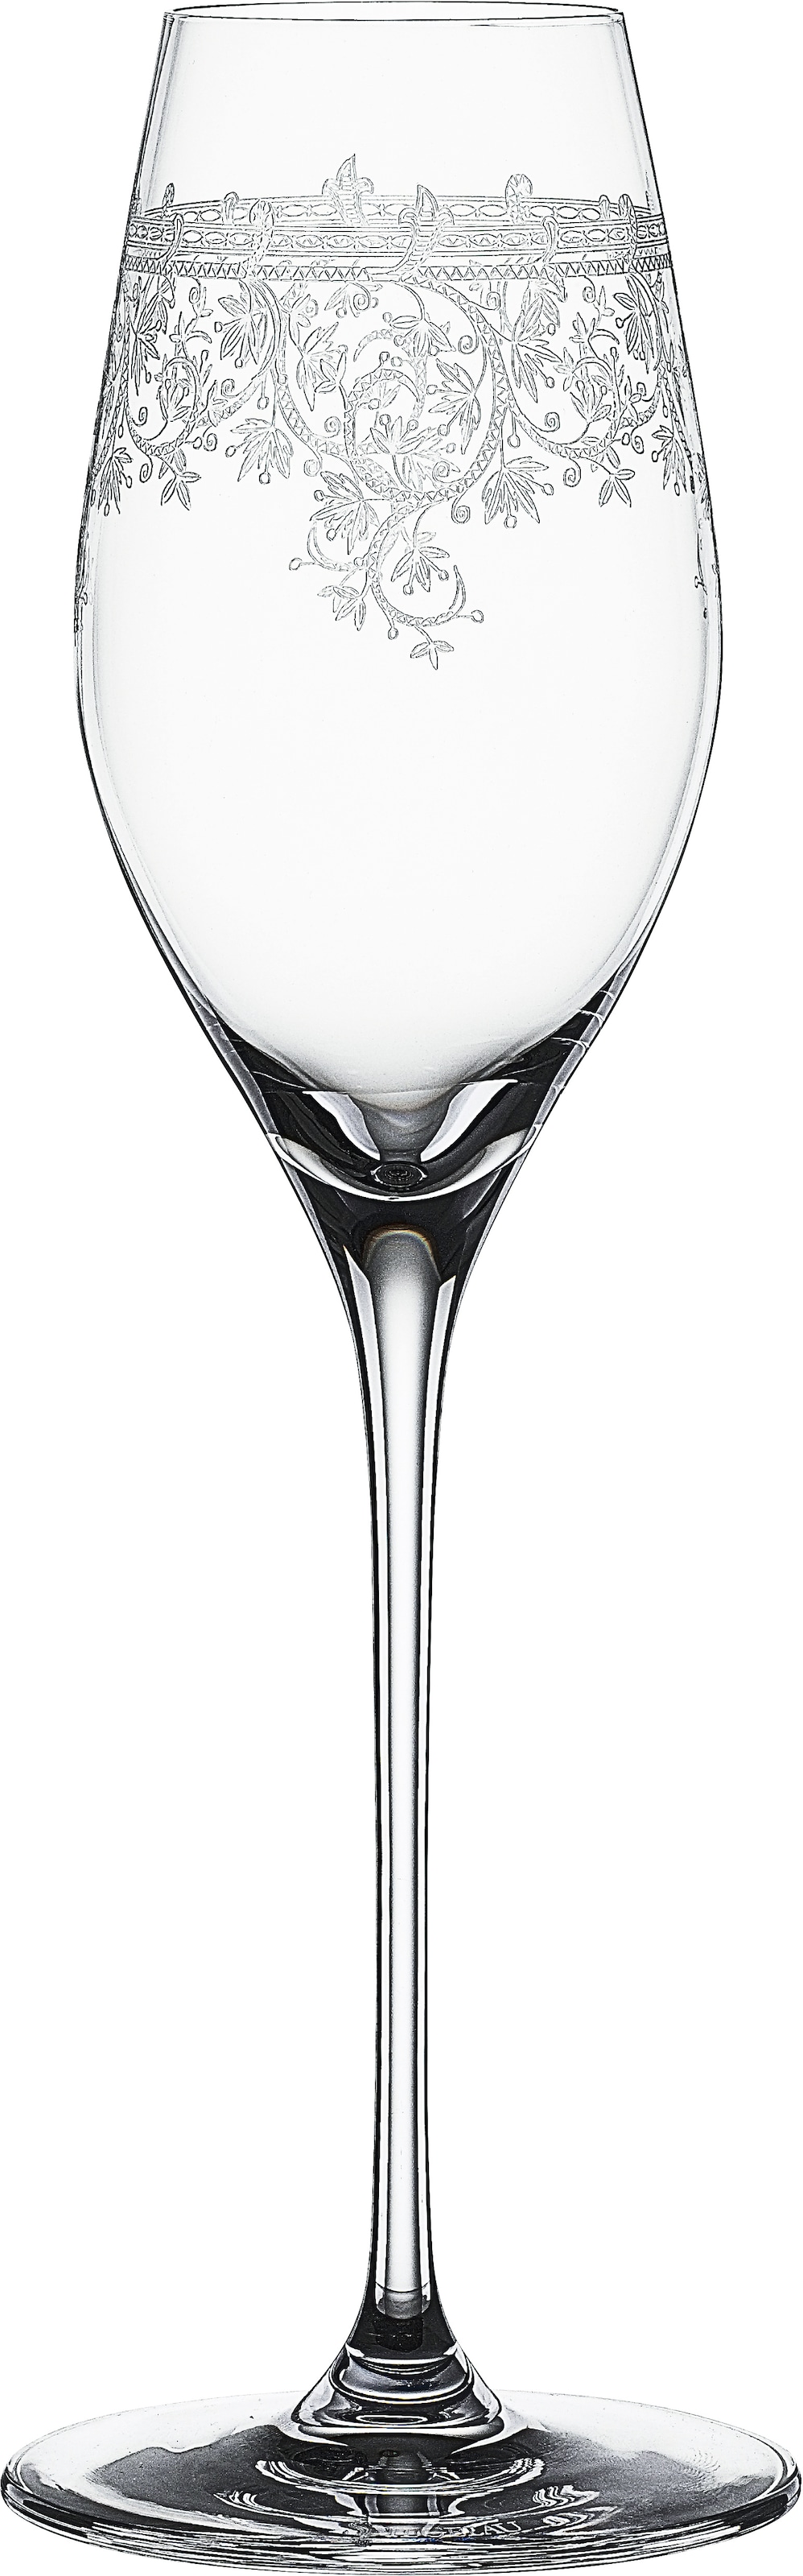 SPIEGELAU Champagnerglas »Arabesque«, (Set, 6 tlg., 6x Champagnergäser), 300 ml, 6-teilig, Made in Europe